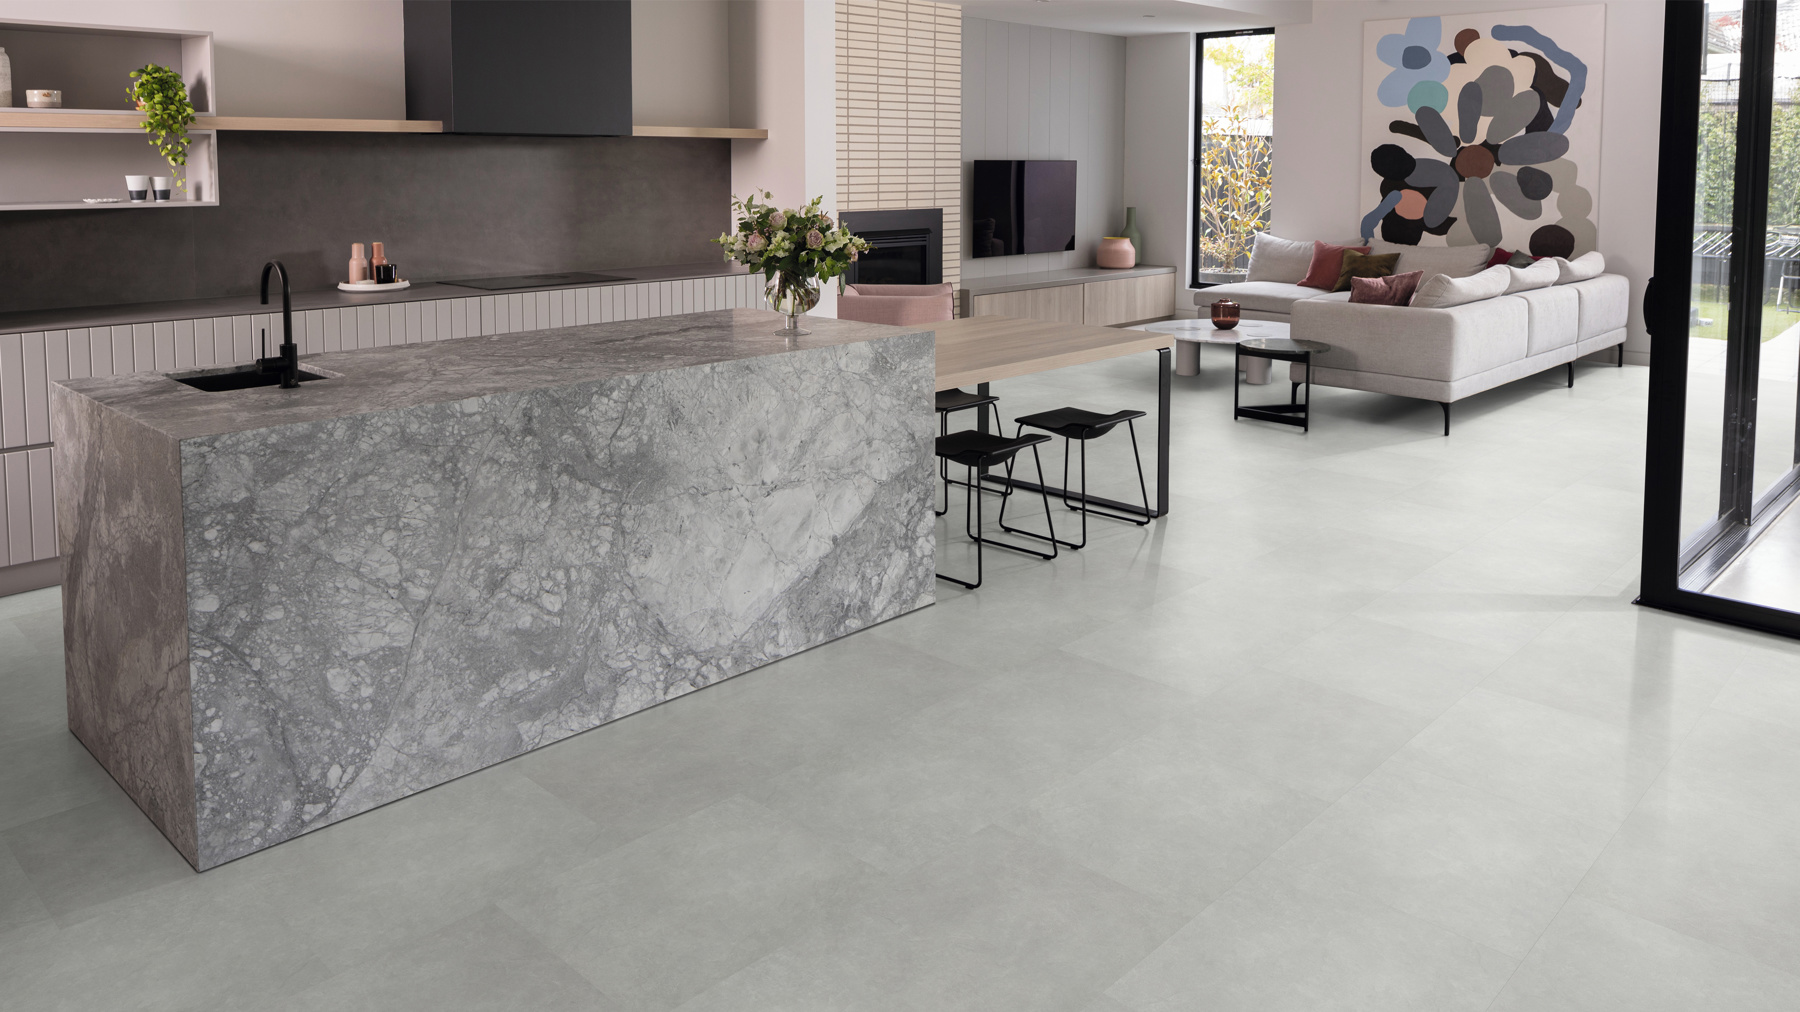 Open kitchen with stone style luxury vinyl flooring